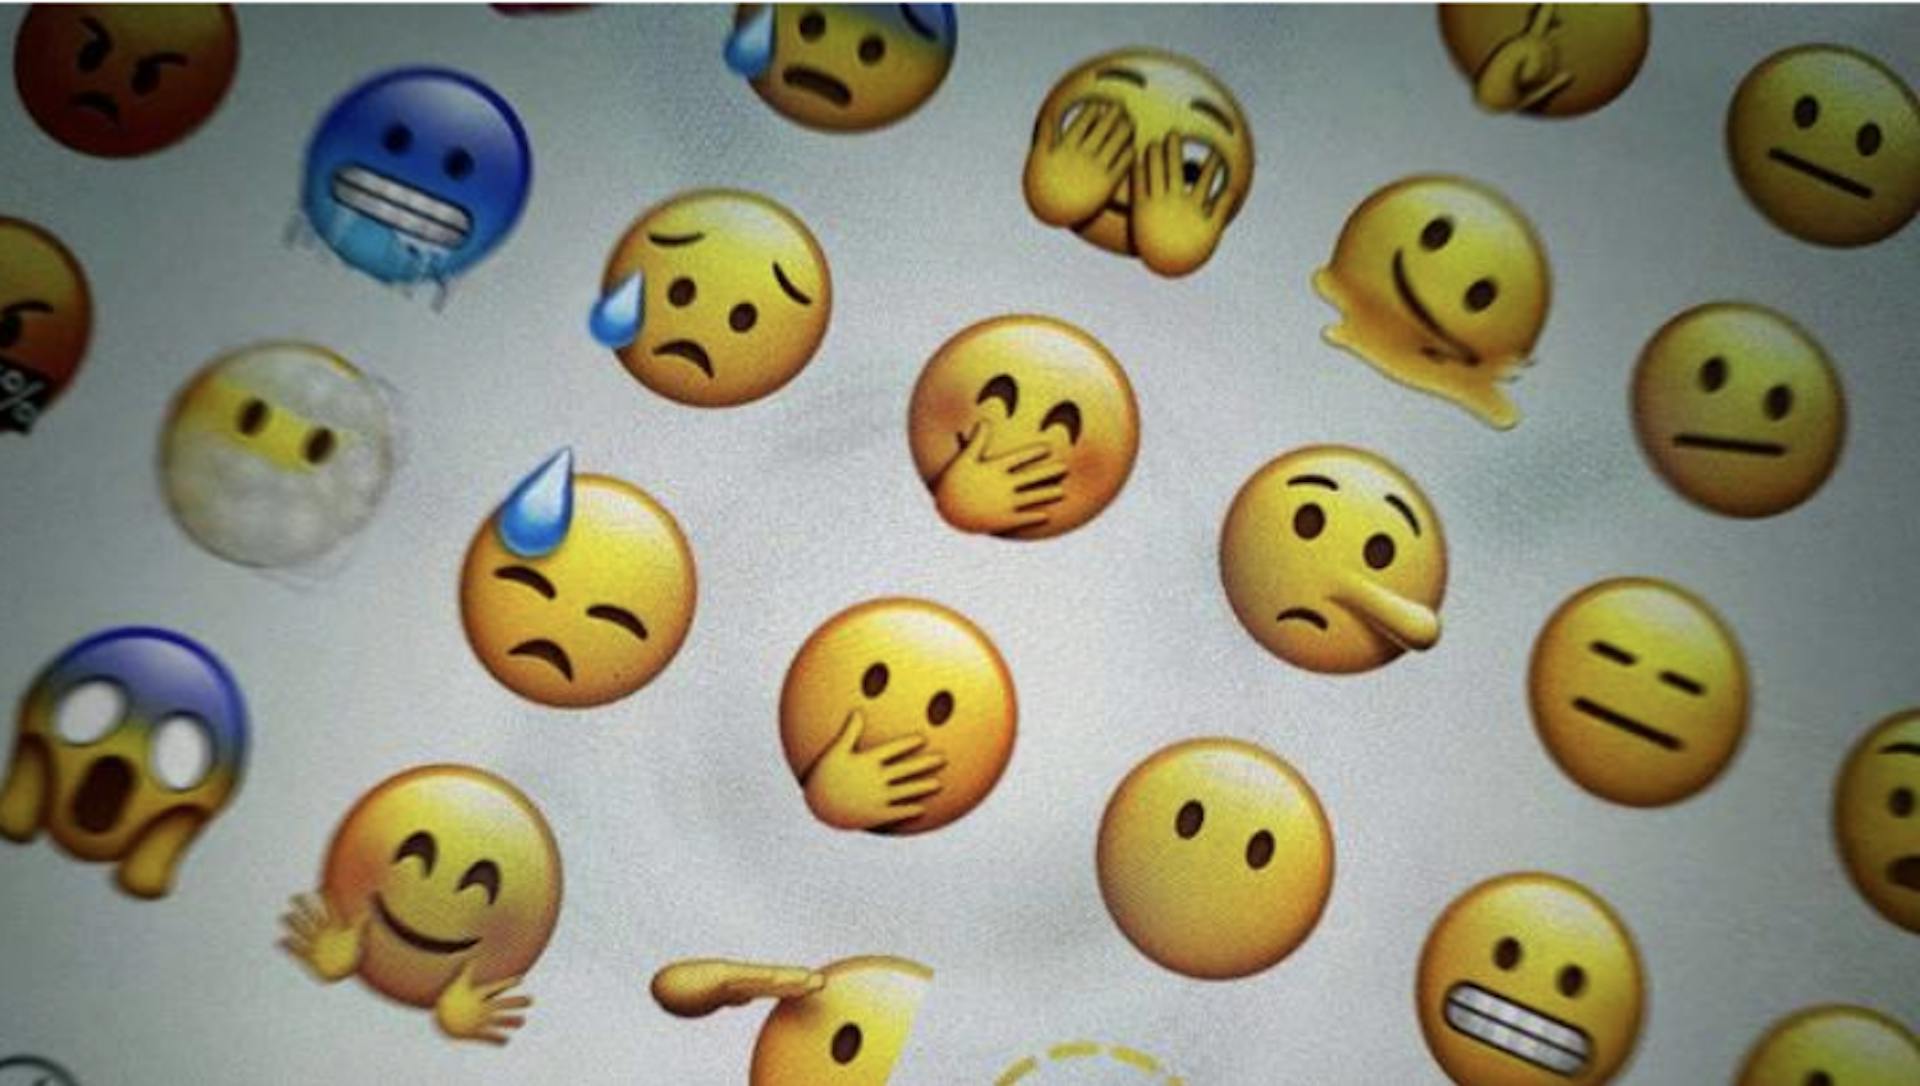 Der Betrüger schickte einen Satz von 25 NFT-Emojis anstelle von Kunstwerken / Quelle: vm.ru